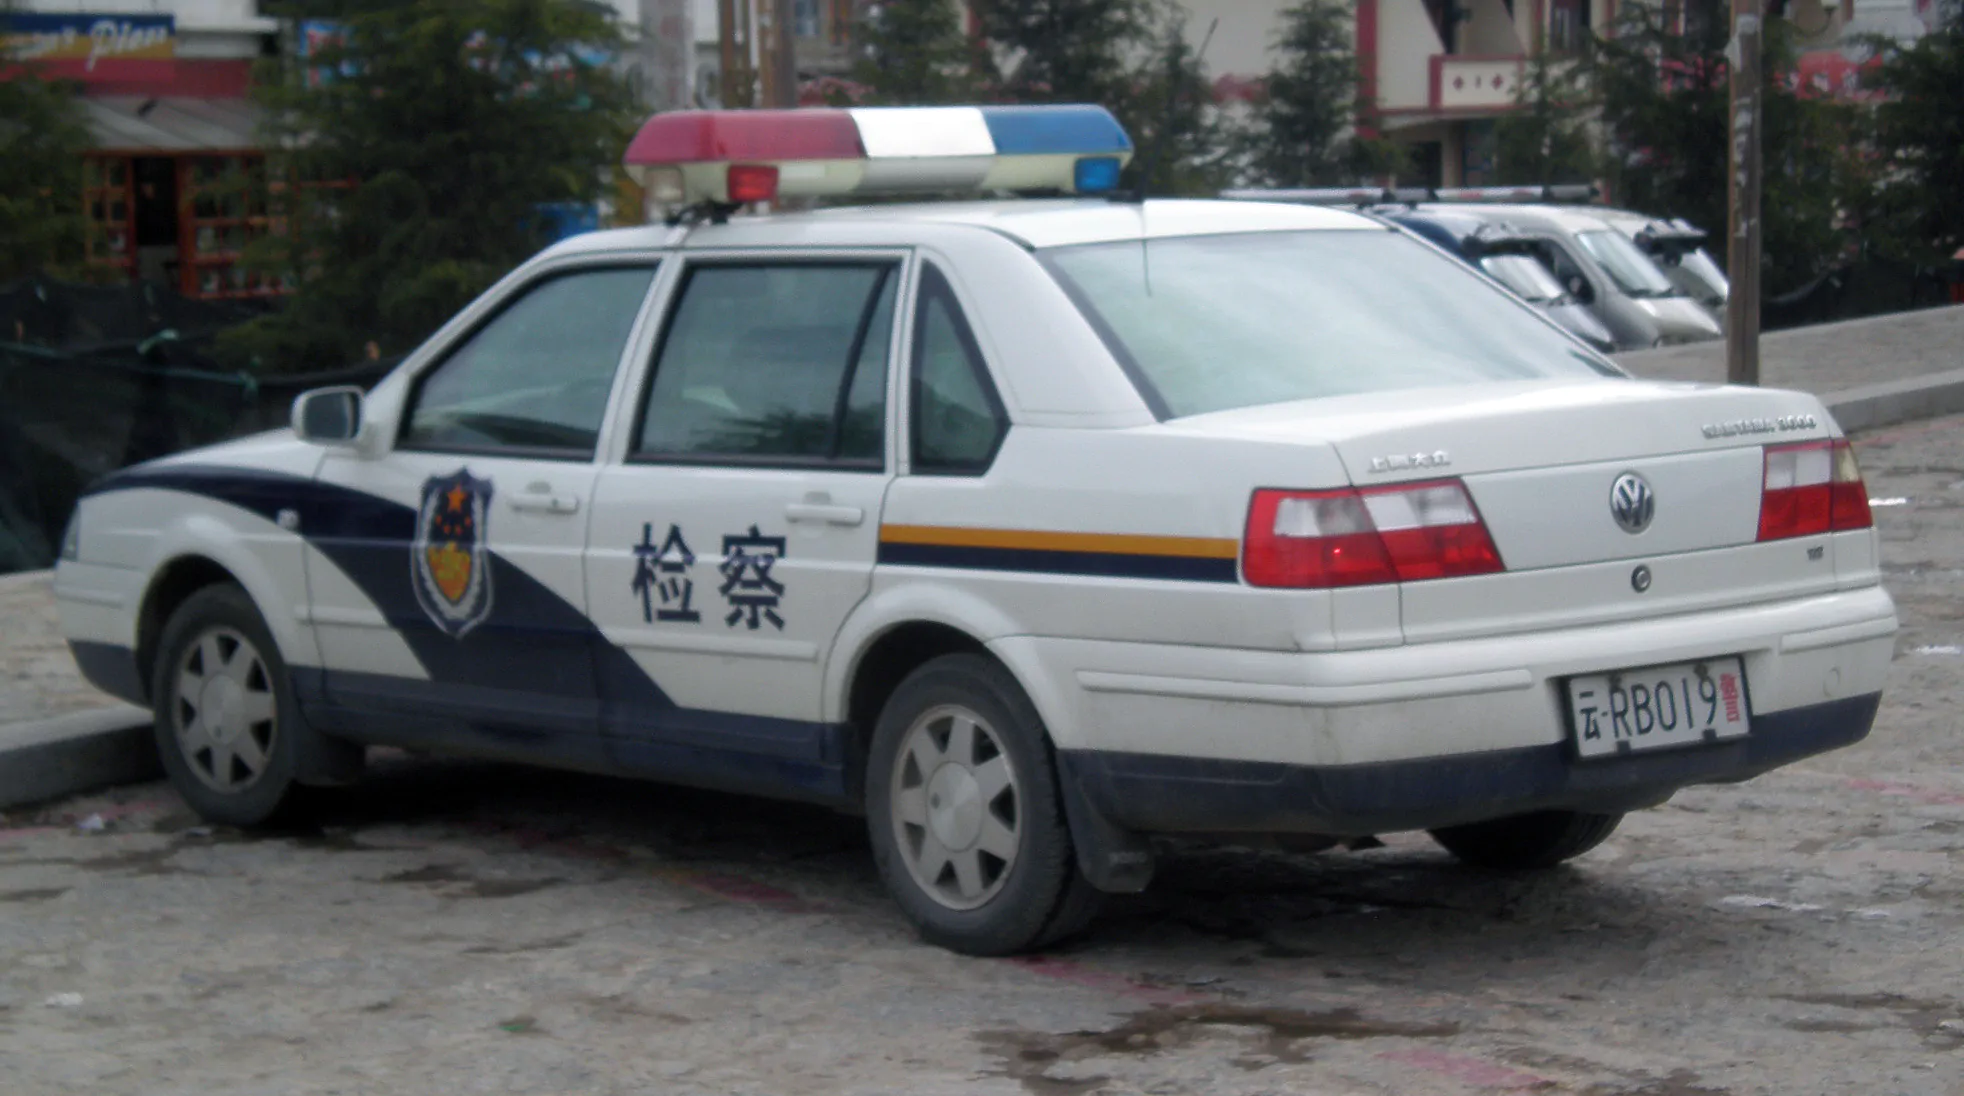 Police Volkswagen 3000 in Shangri La